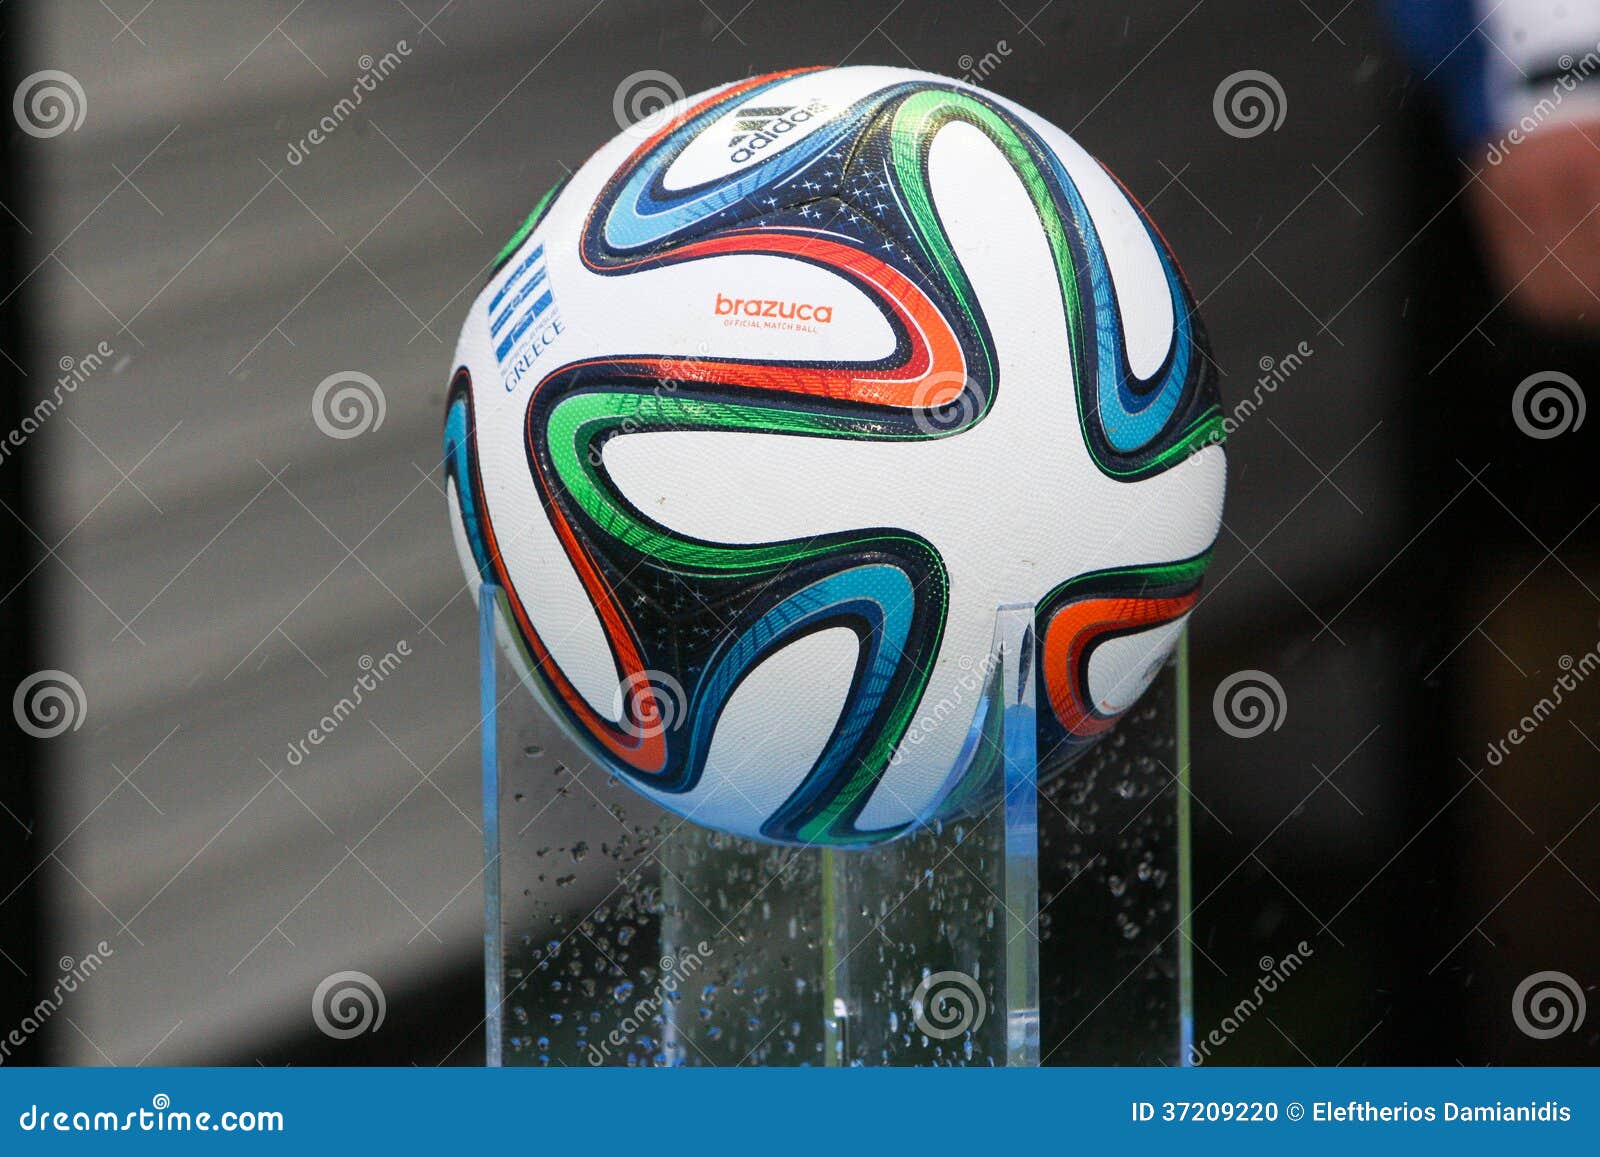 https://thumbs.dreamstime.com/z/mundial-brazuca-ball-football-adidas-thessaloniki-greece-jan-world-cup-official-fifa-matchball-world-cup-toumpa-37209220.jpg